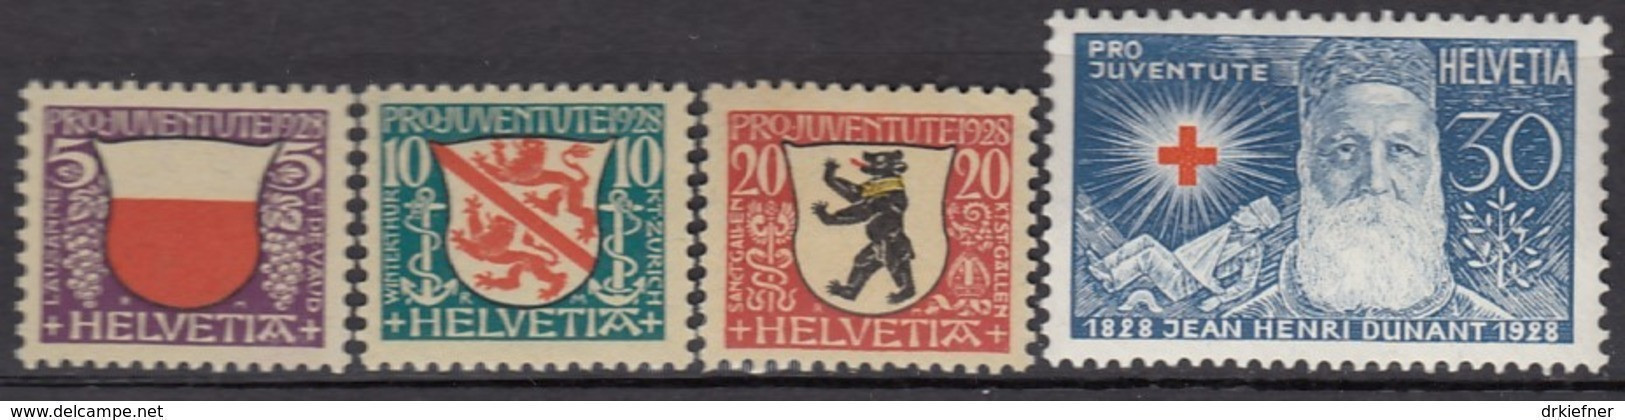 SCHWEIZ  229-232,  Postfrisch **, Pro Juventute 1928, Wappen - Unused Stamps